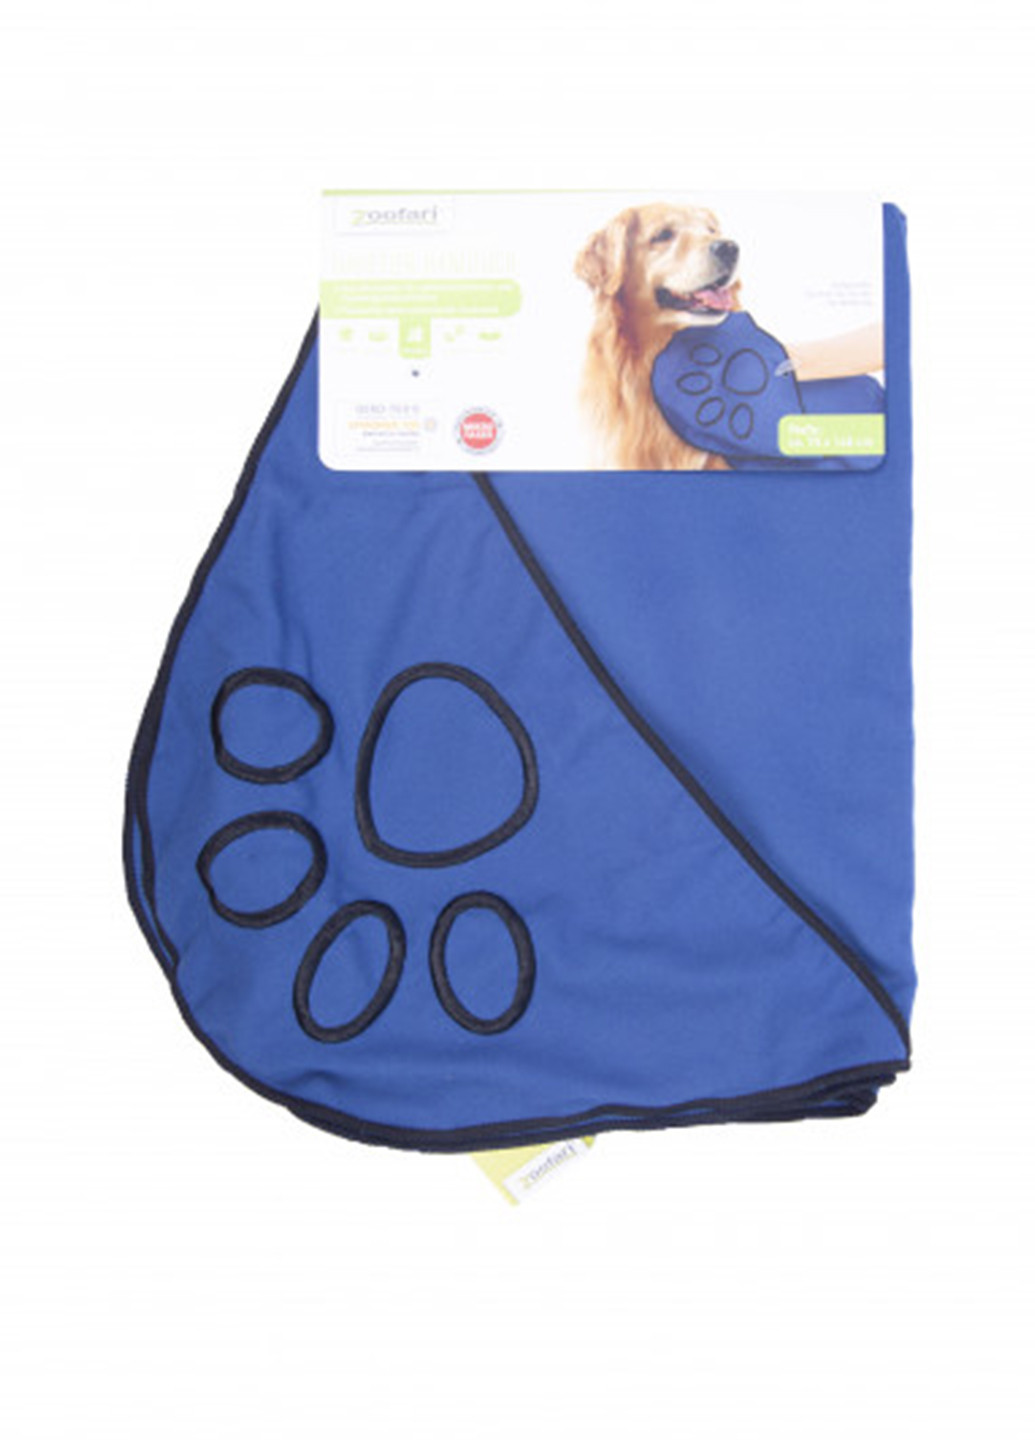 Zoofari полотенце для собаки, 70х100 см однотонный синий производство - Германия